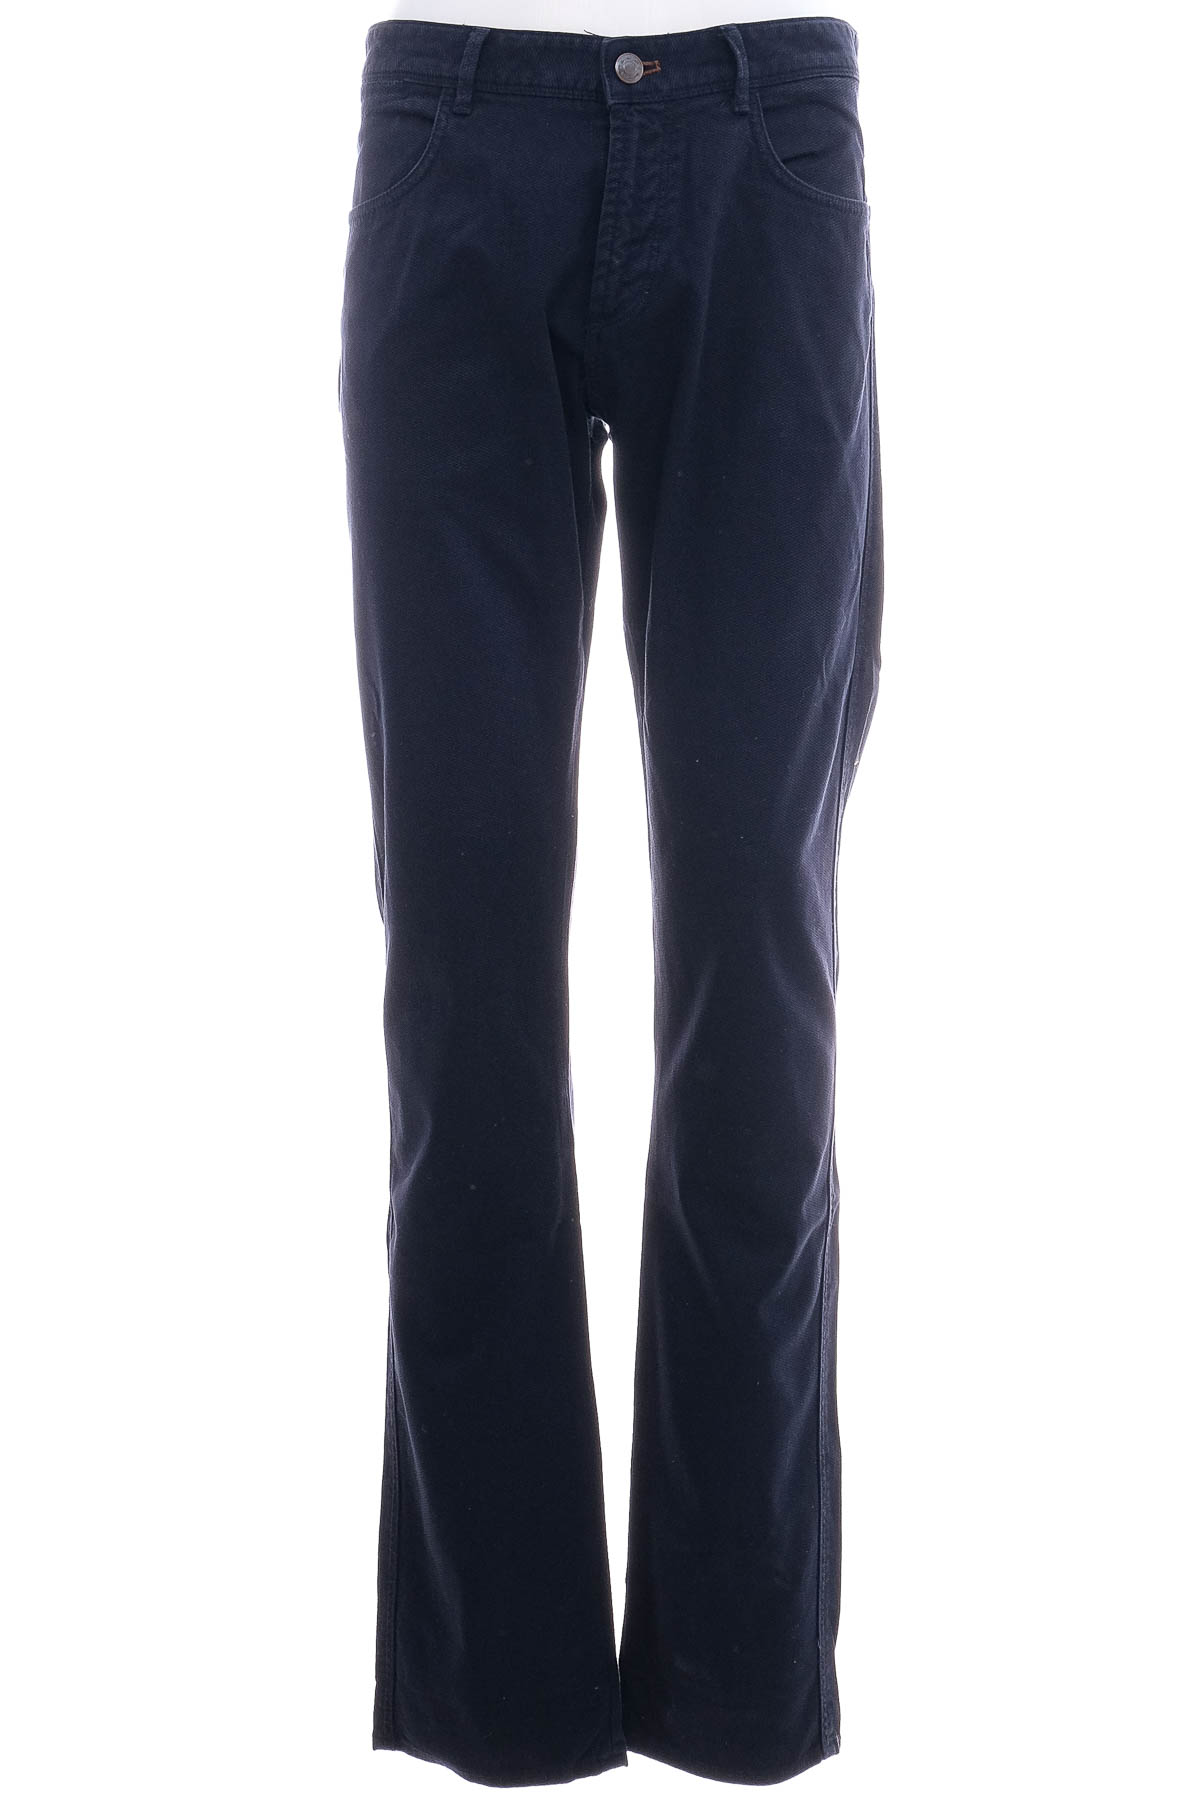 Jeans pentru bărbăți - Massimo Dutti - 0